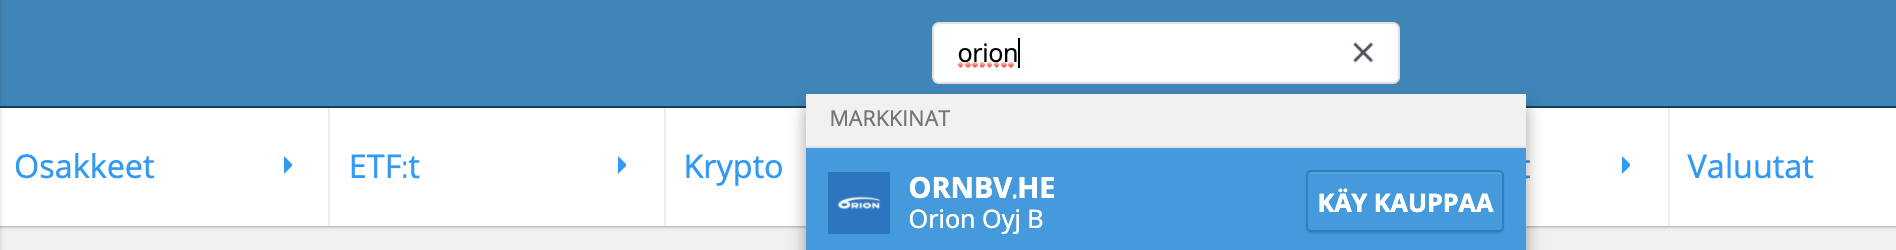 Hae Orion Osake etorolta